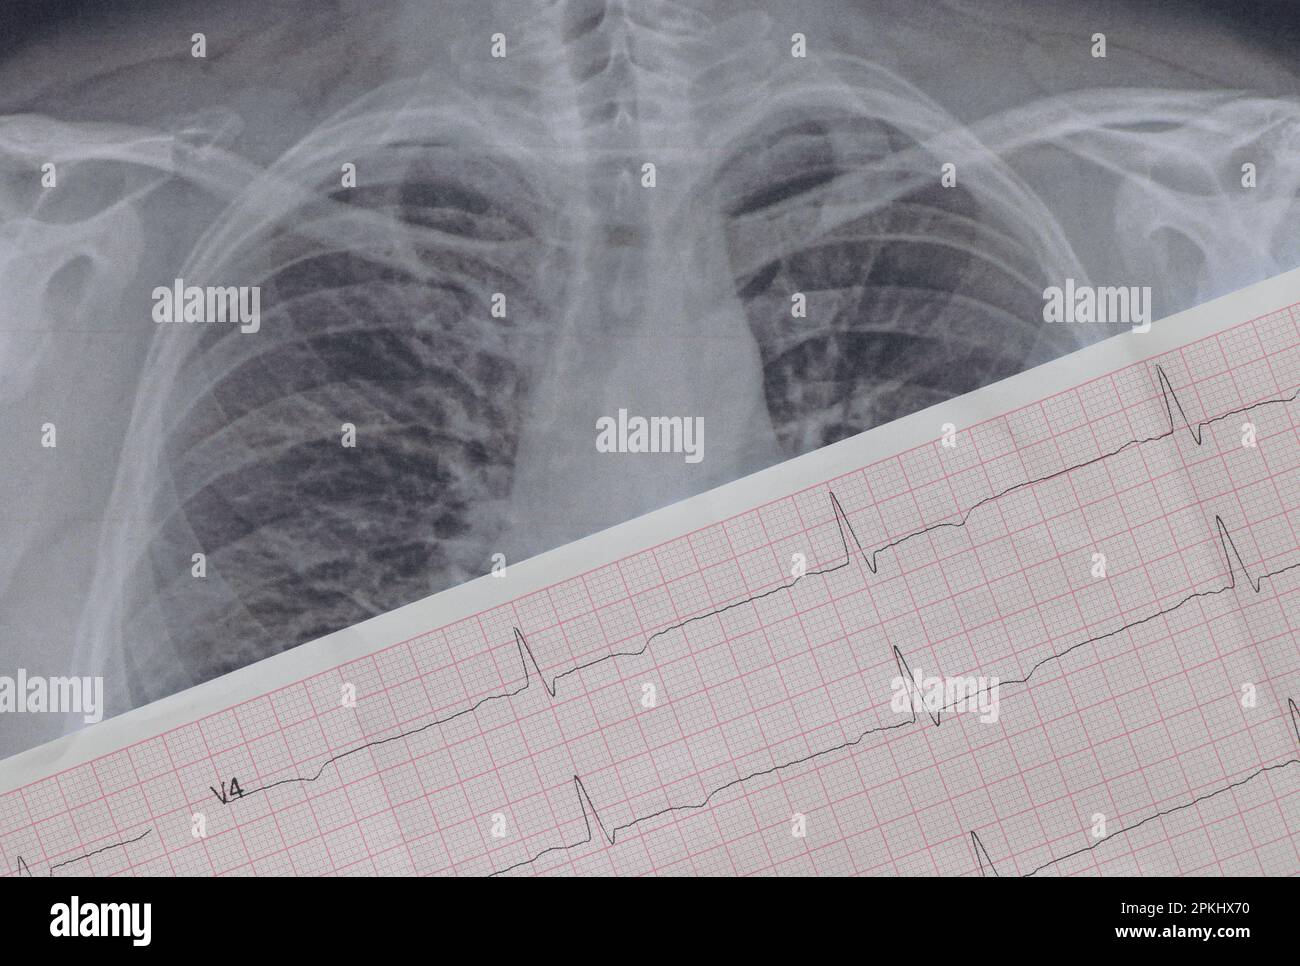 Immagine fluorografica dei polmoni su carta primo piano e un cardiogramma su carta, polmoni umani sani per un esame di routine Foto Stock